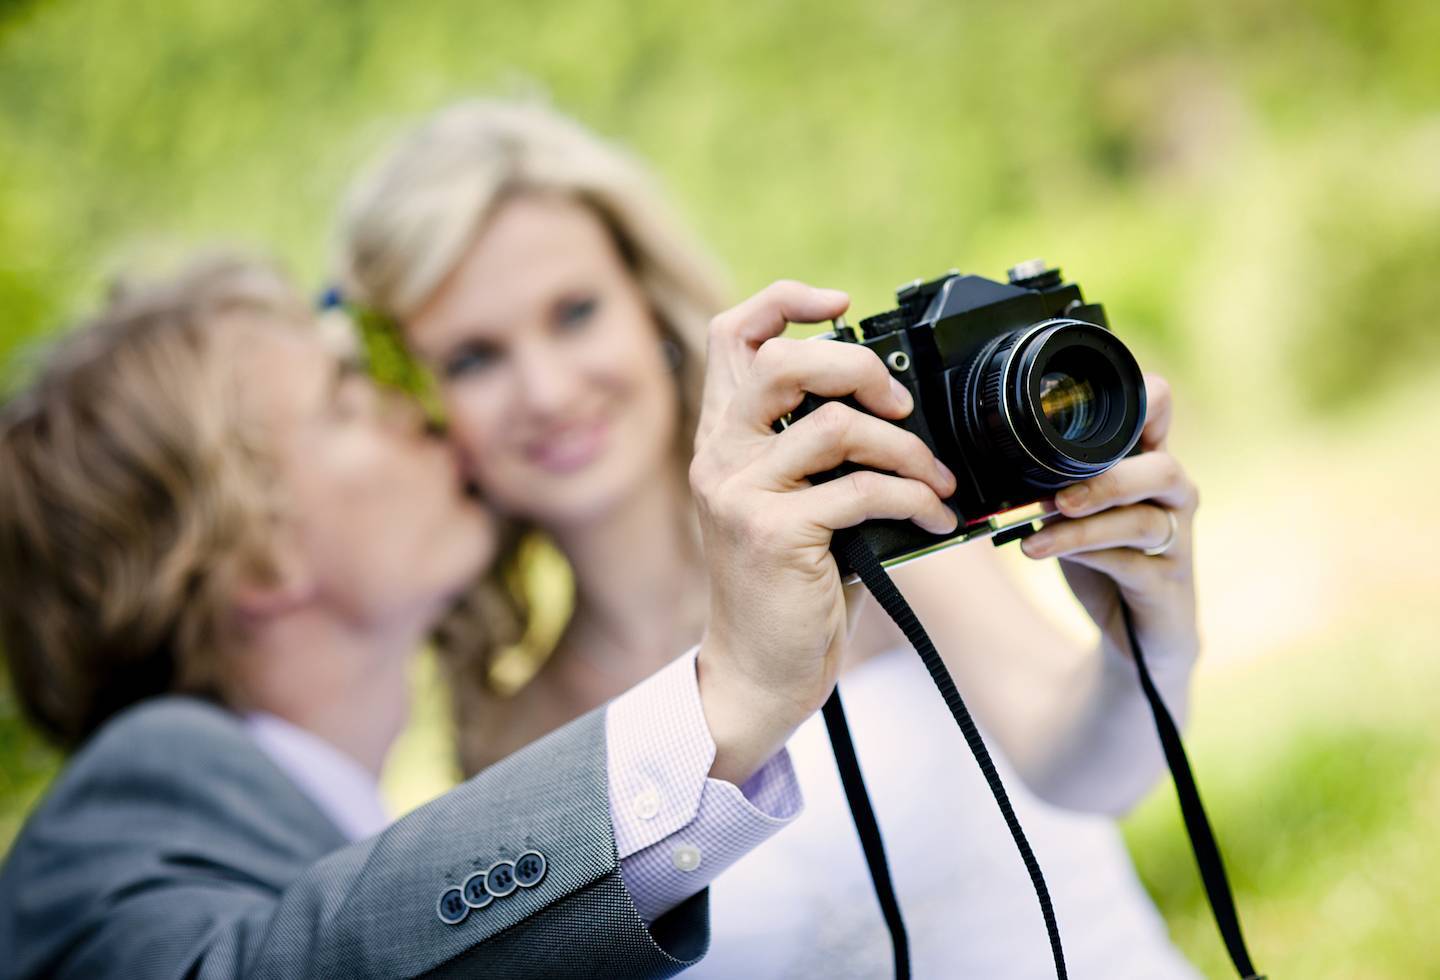 Лучший фотограф искренне считает вашу свадьбу уникальной